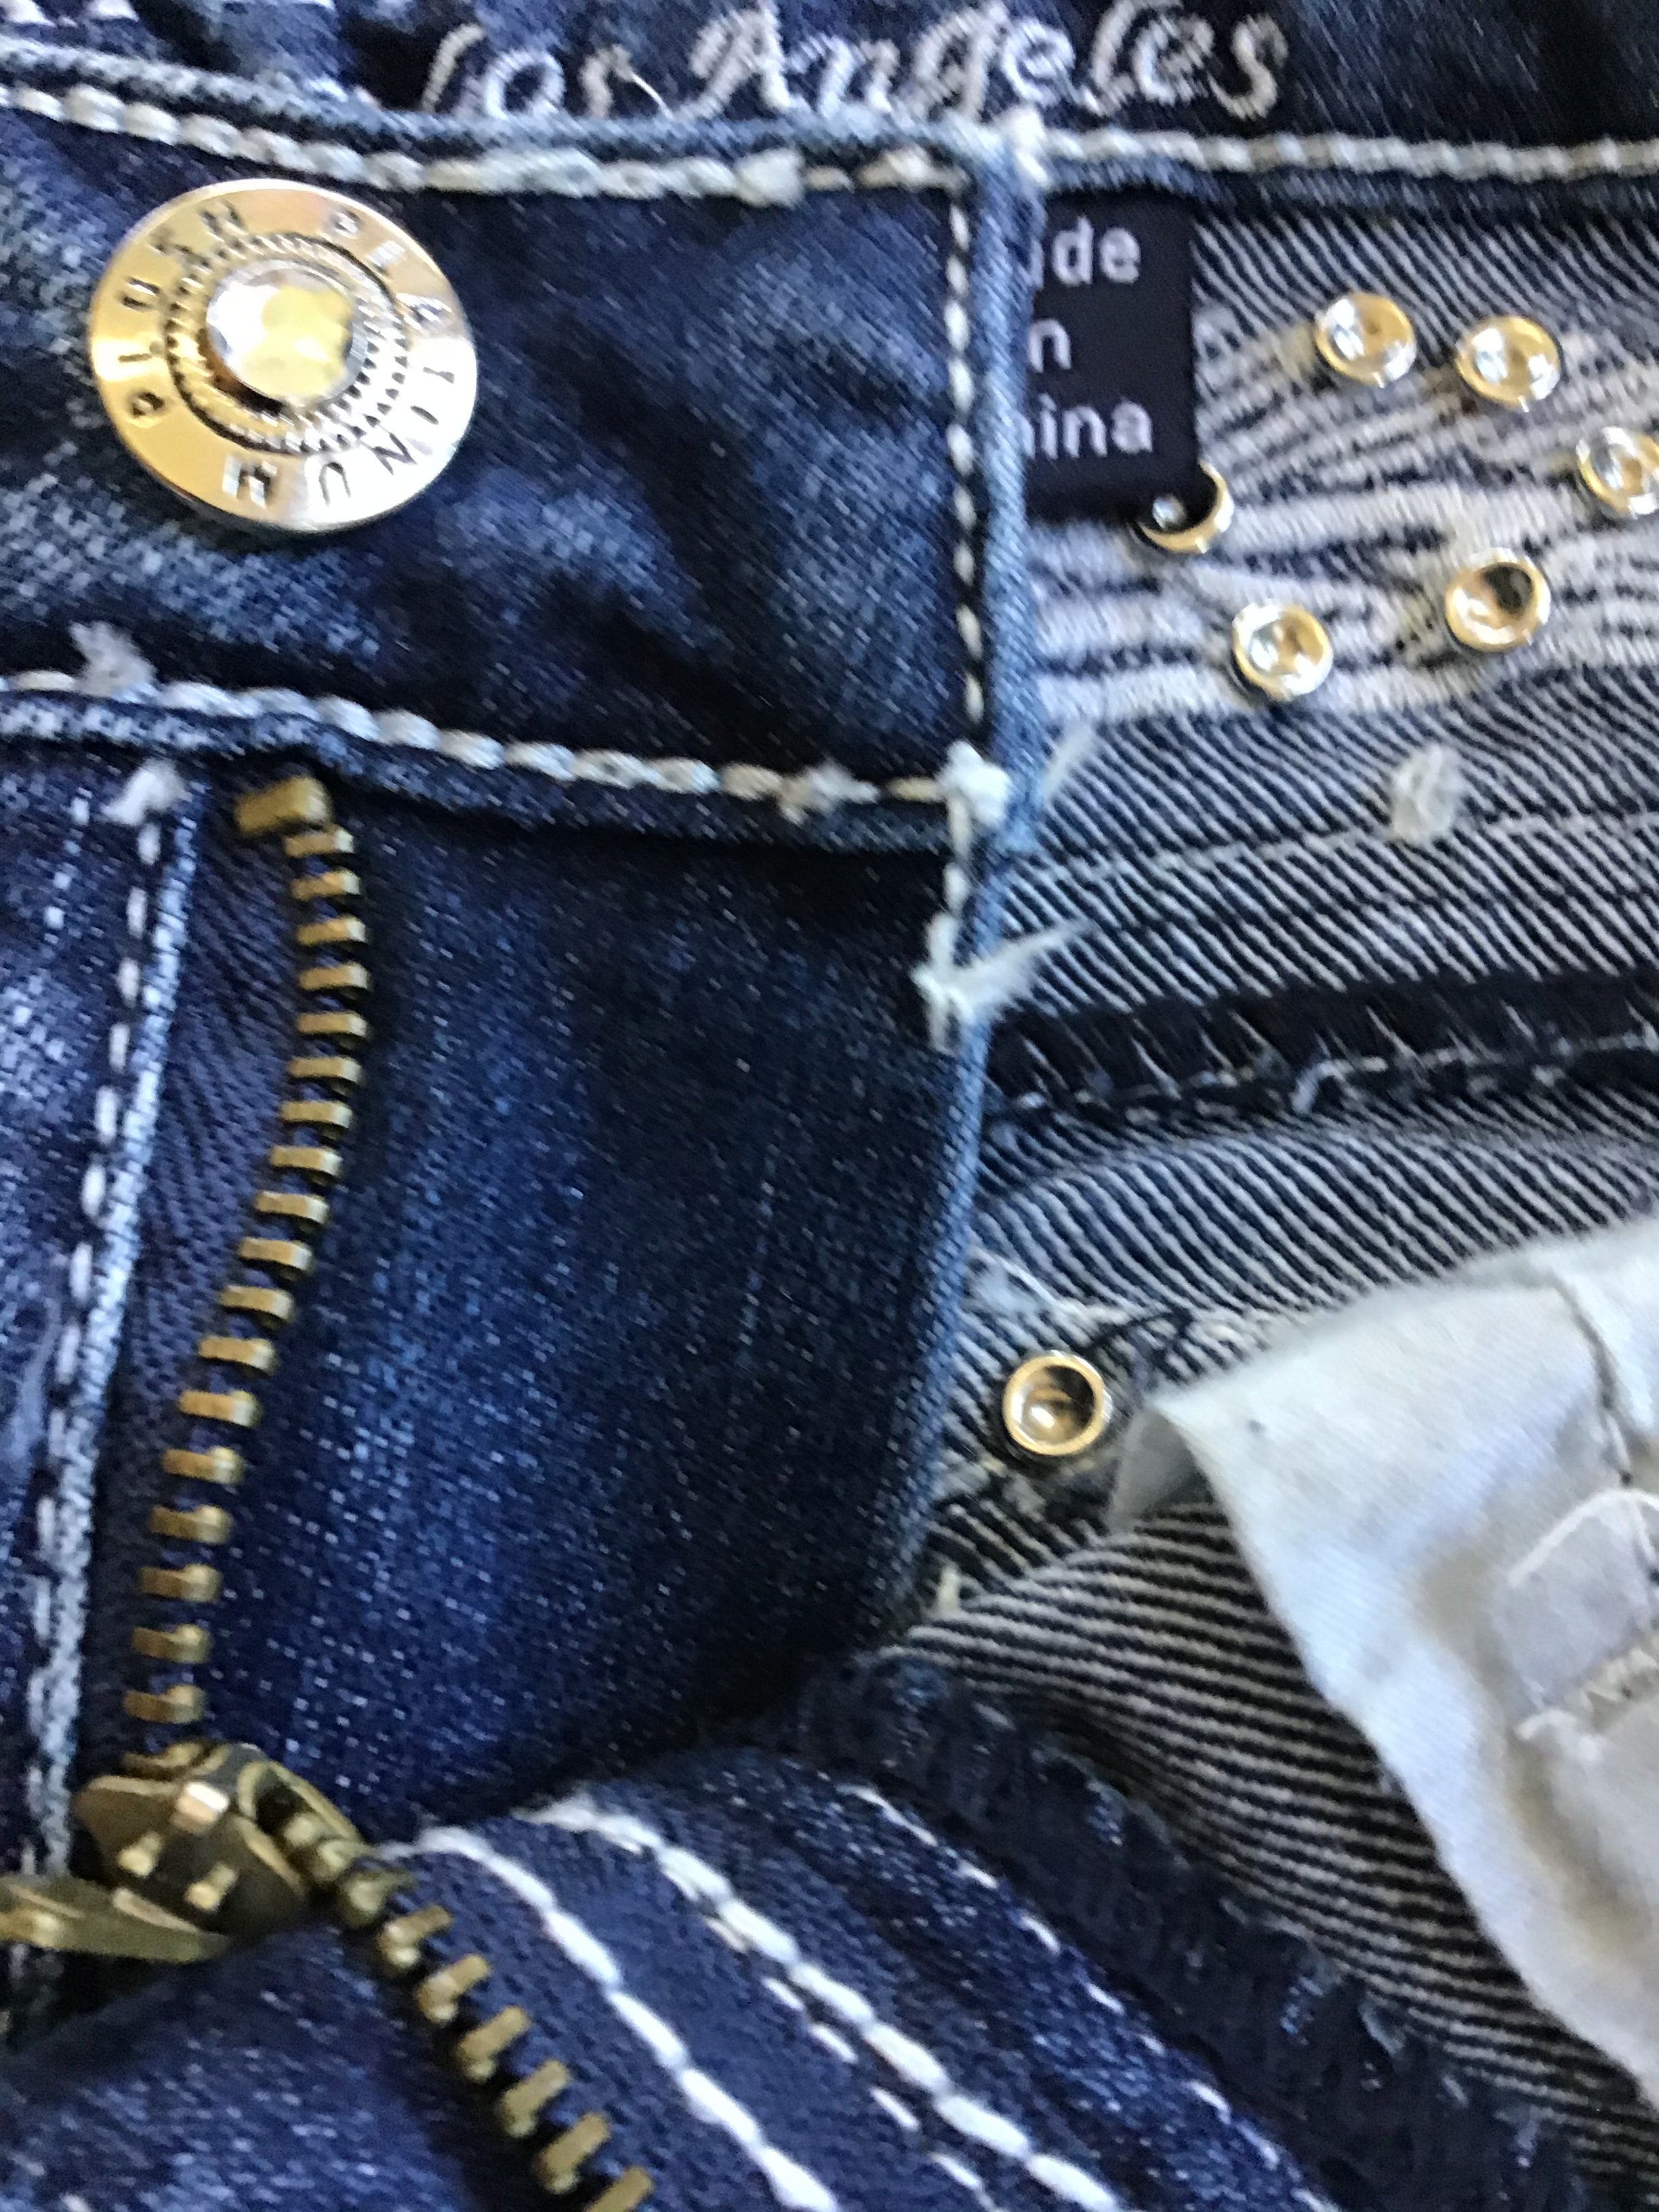 Boot Cut denim with wings & motorcycle detail on  pockets Biker jeans women Boot cut denim women's biker clothing,Skull Bling Boot Cut Jean